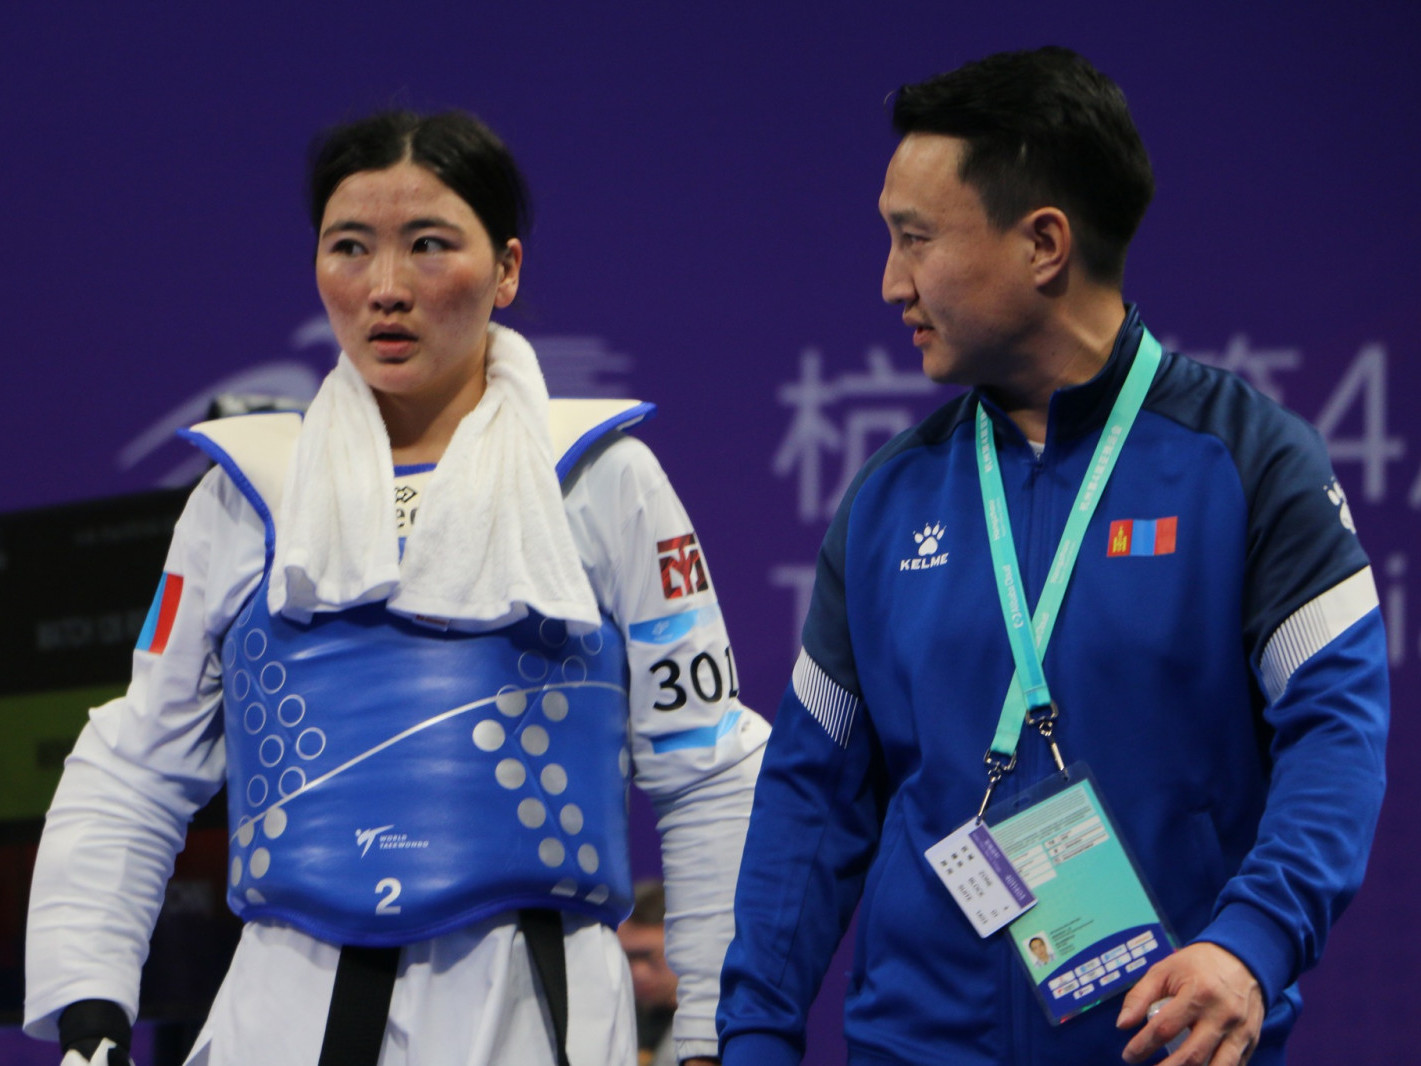 У.Сүрэнжав “Ханжоу-2022” Азийн наадмын Монголын багийн анхны медальтан боллоо